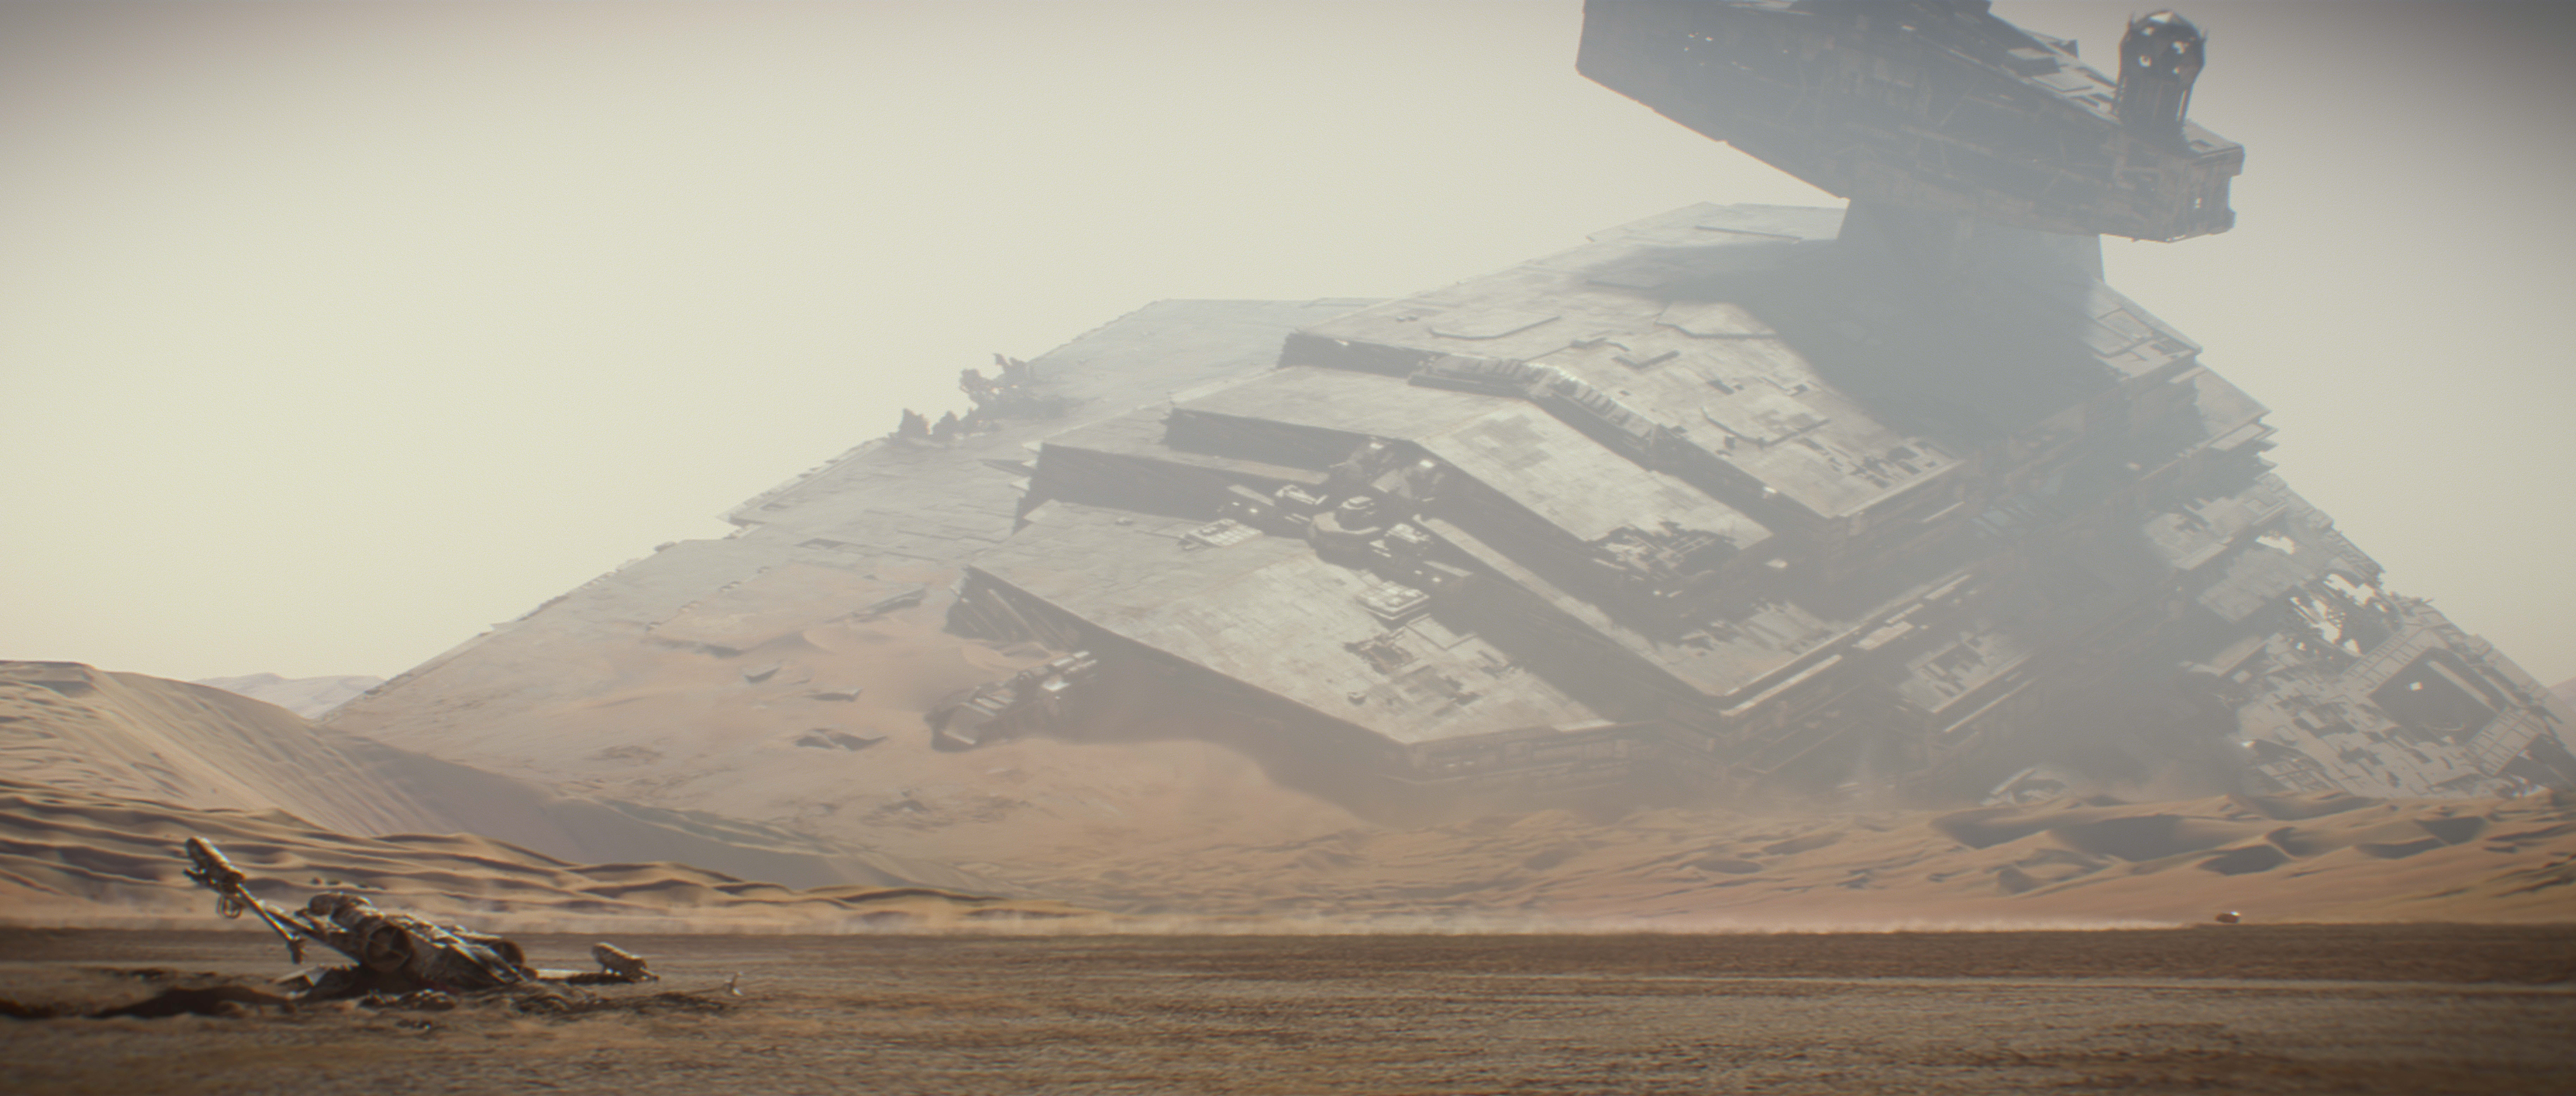 movie, star wars episode vii: the force awakens, star wars Smartphone Background